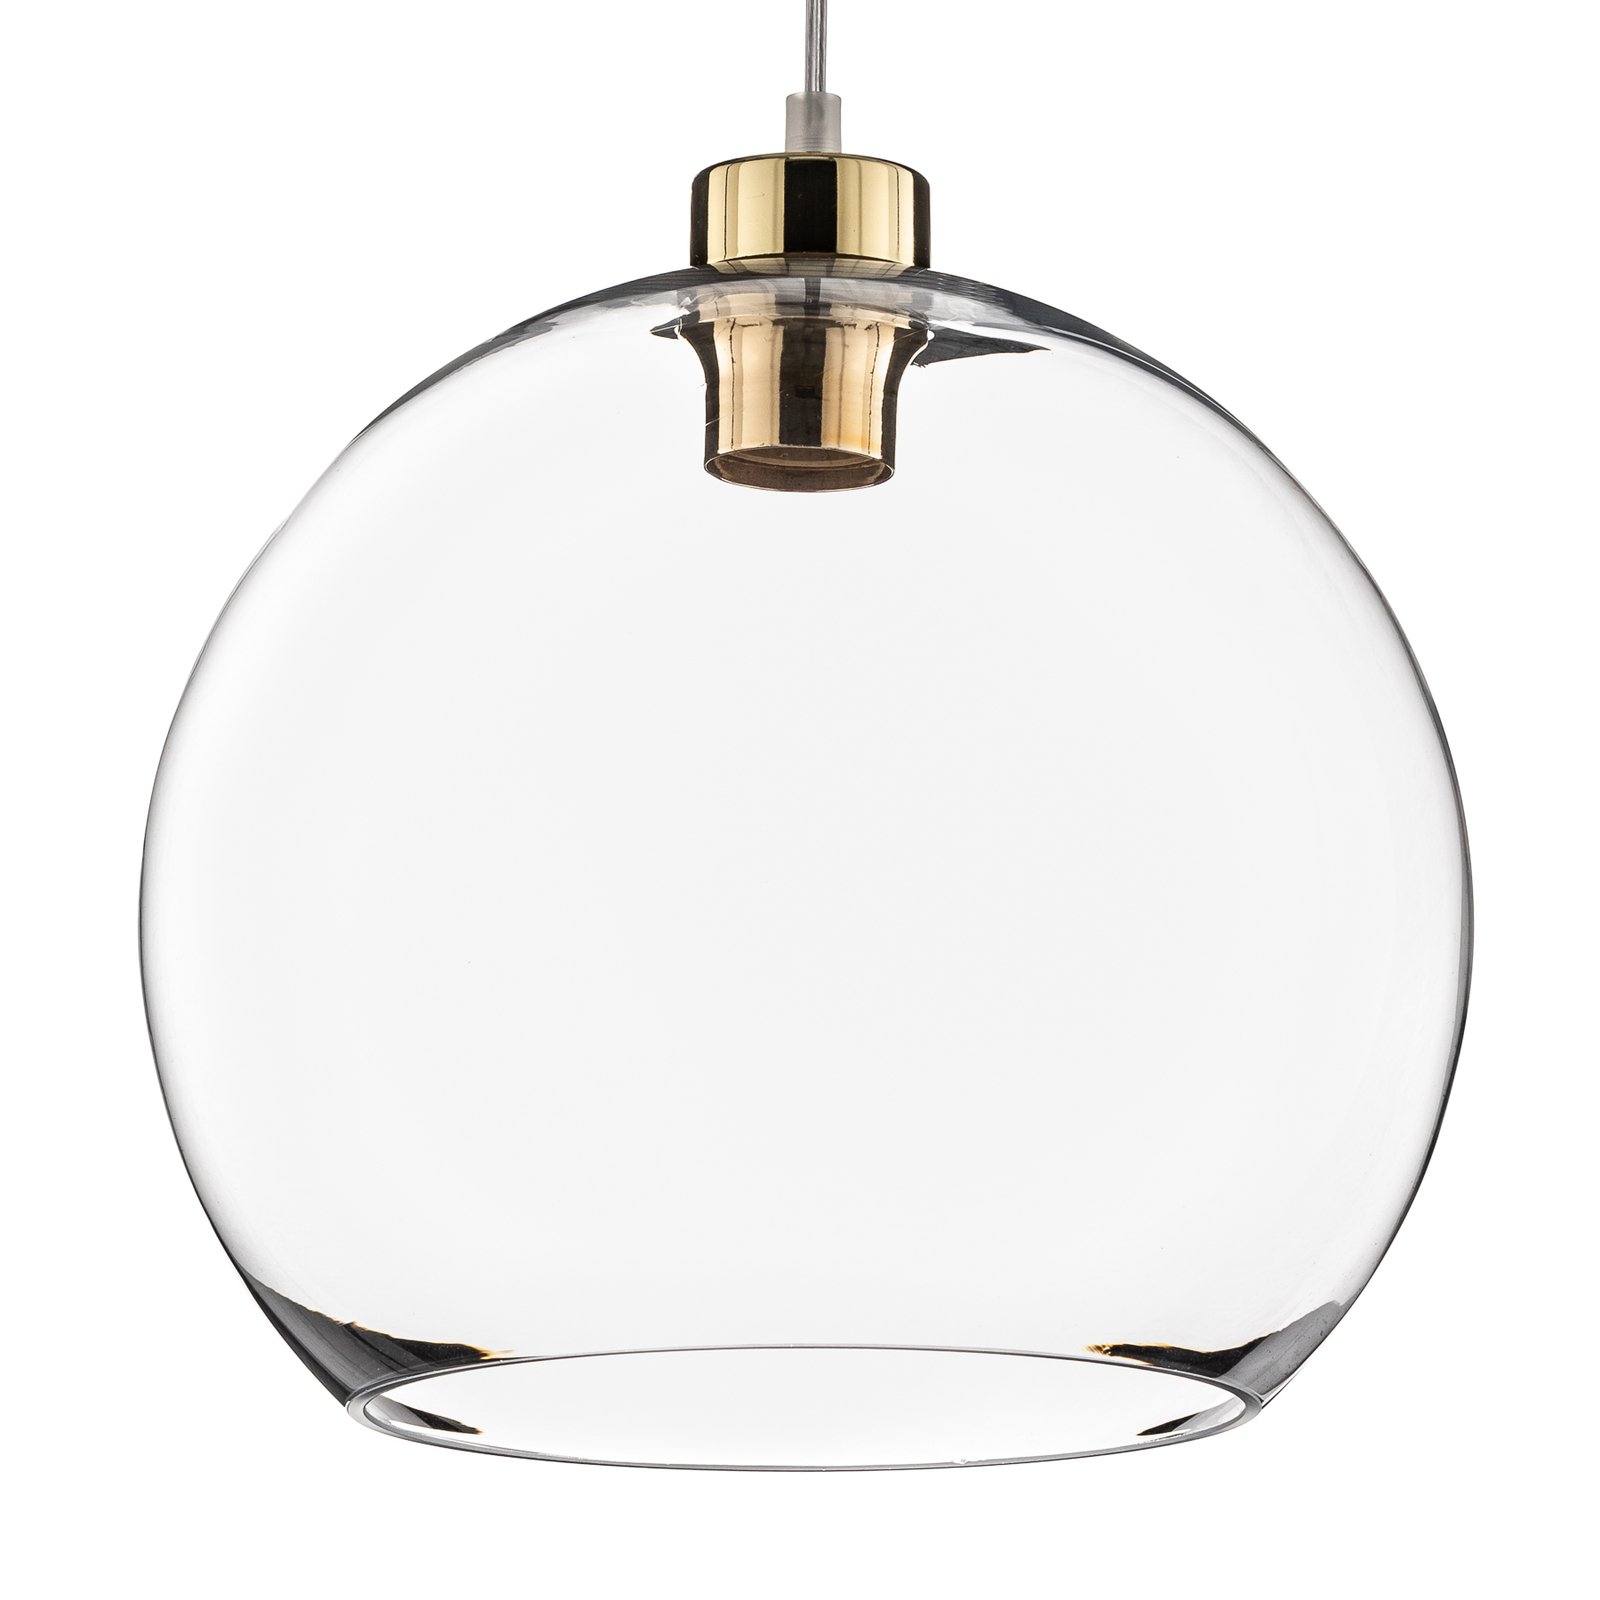 Cubus pendant light, 1-bulb, white